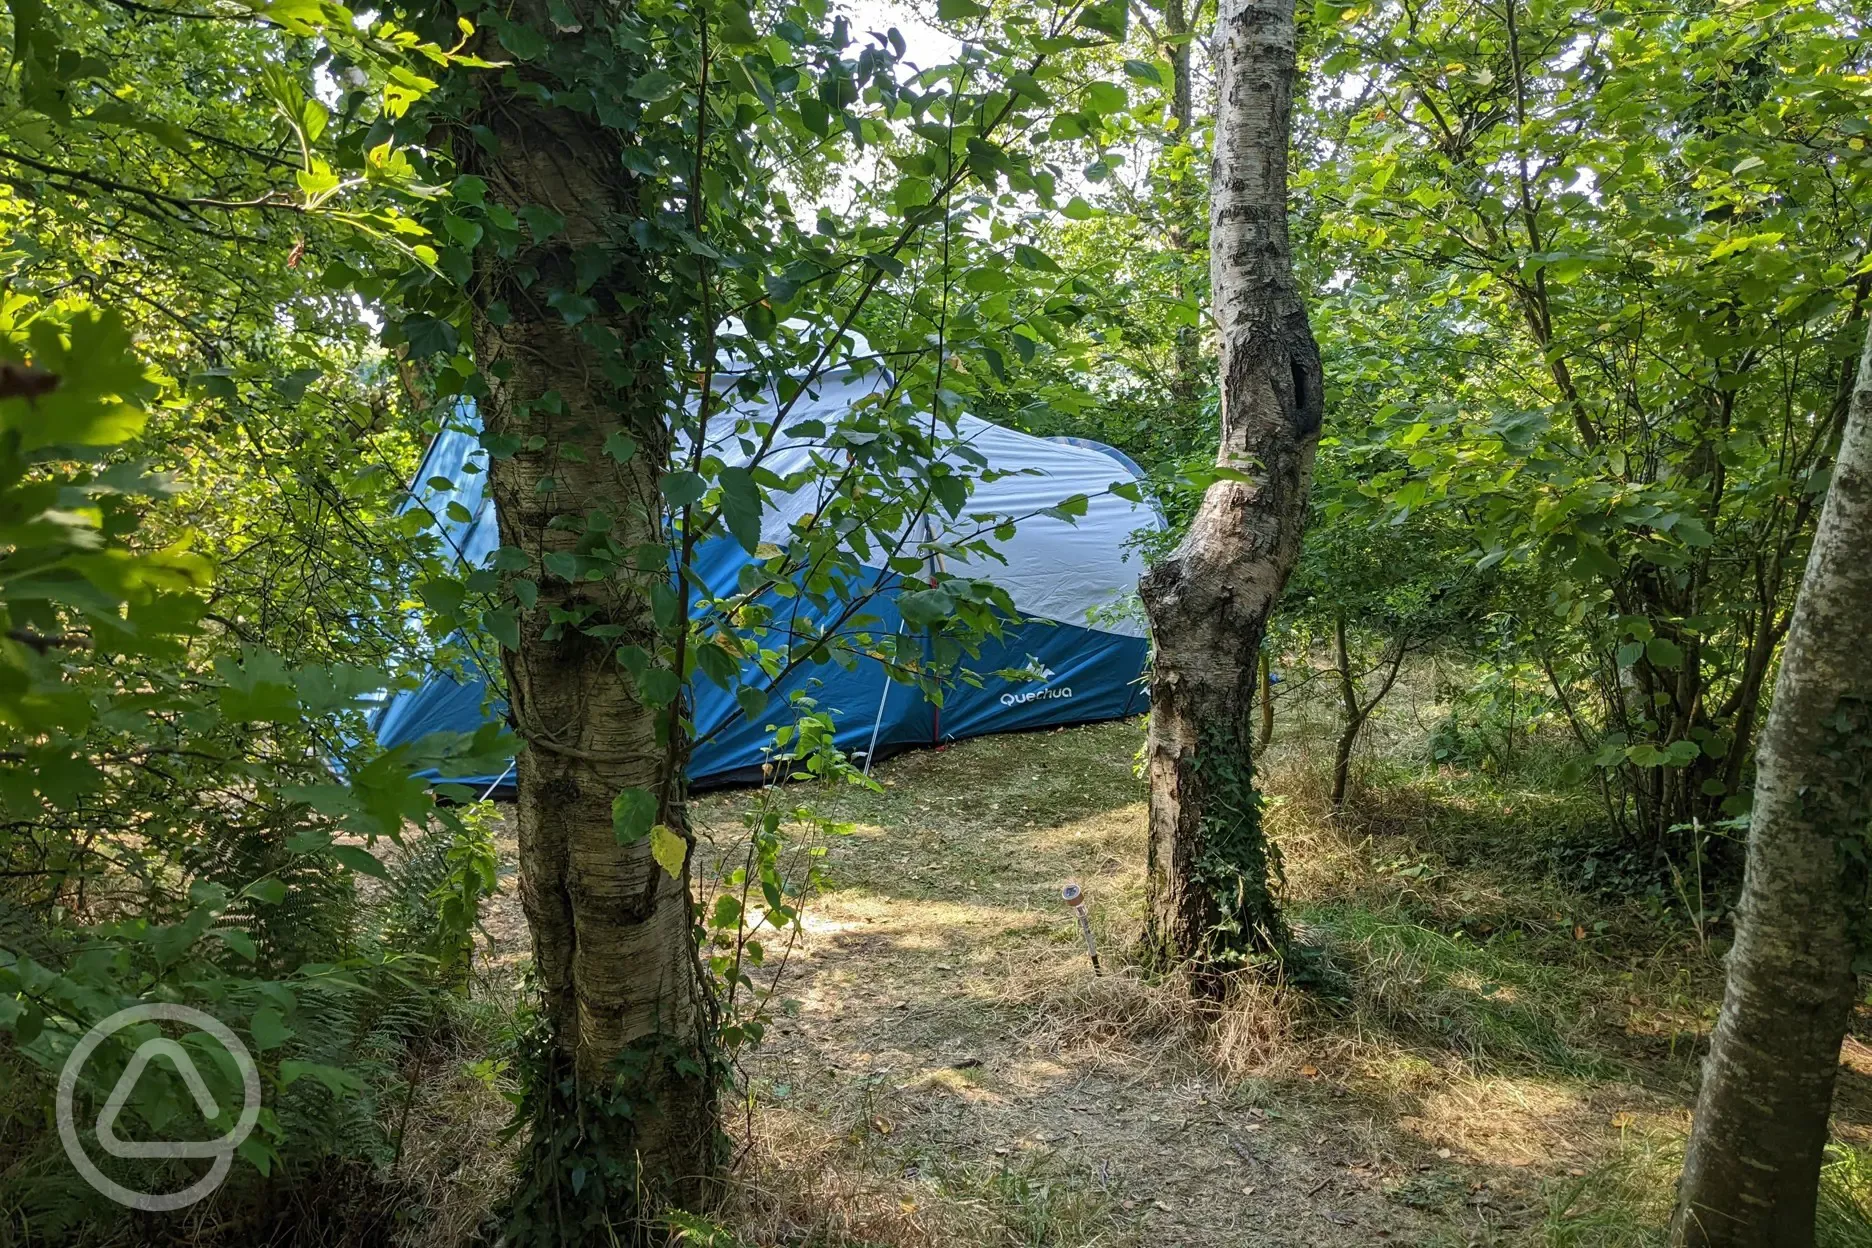 Woodland camping